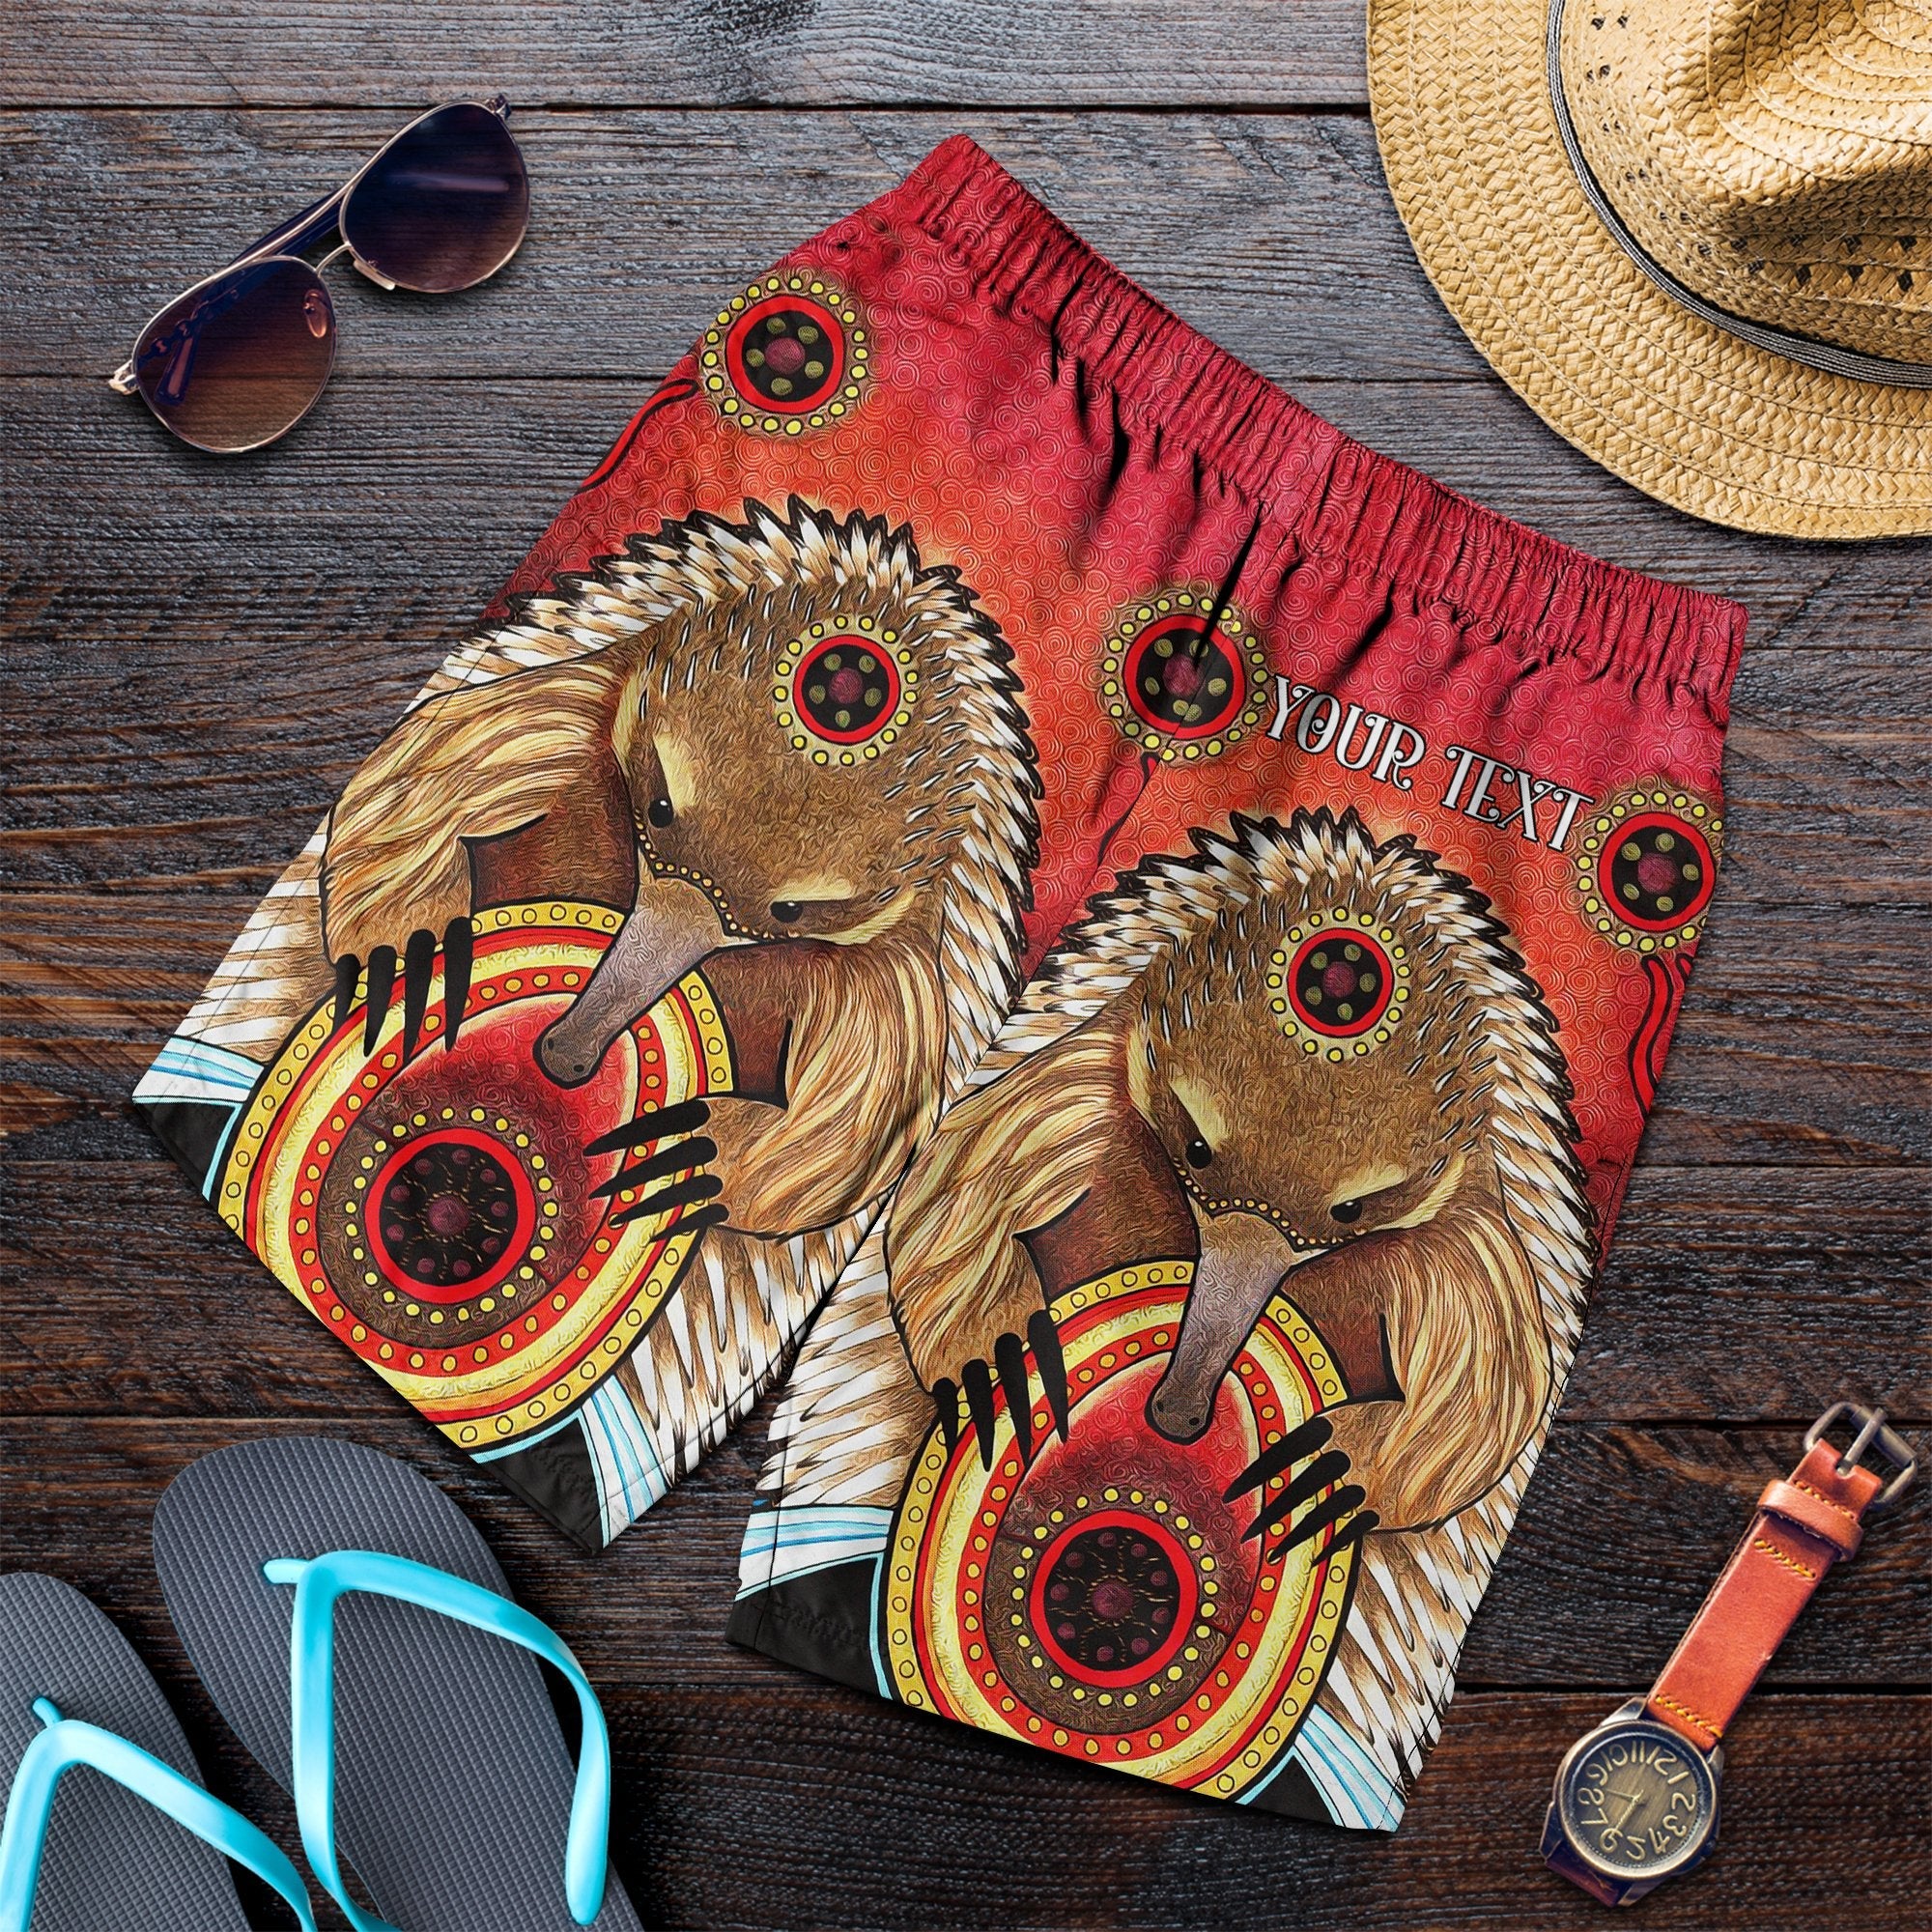 (Custom) Aboriginal Men's Shorts - Australian Echidna